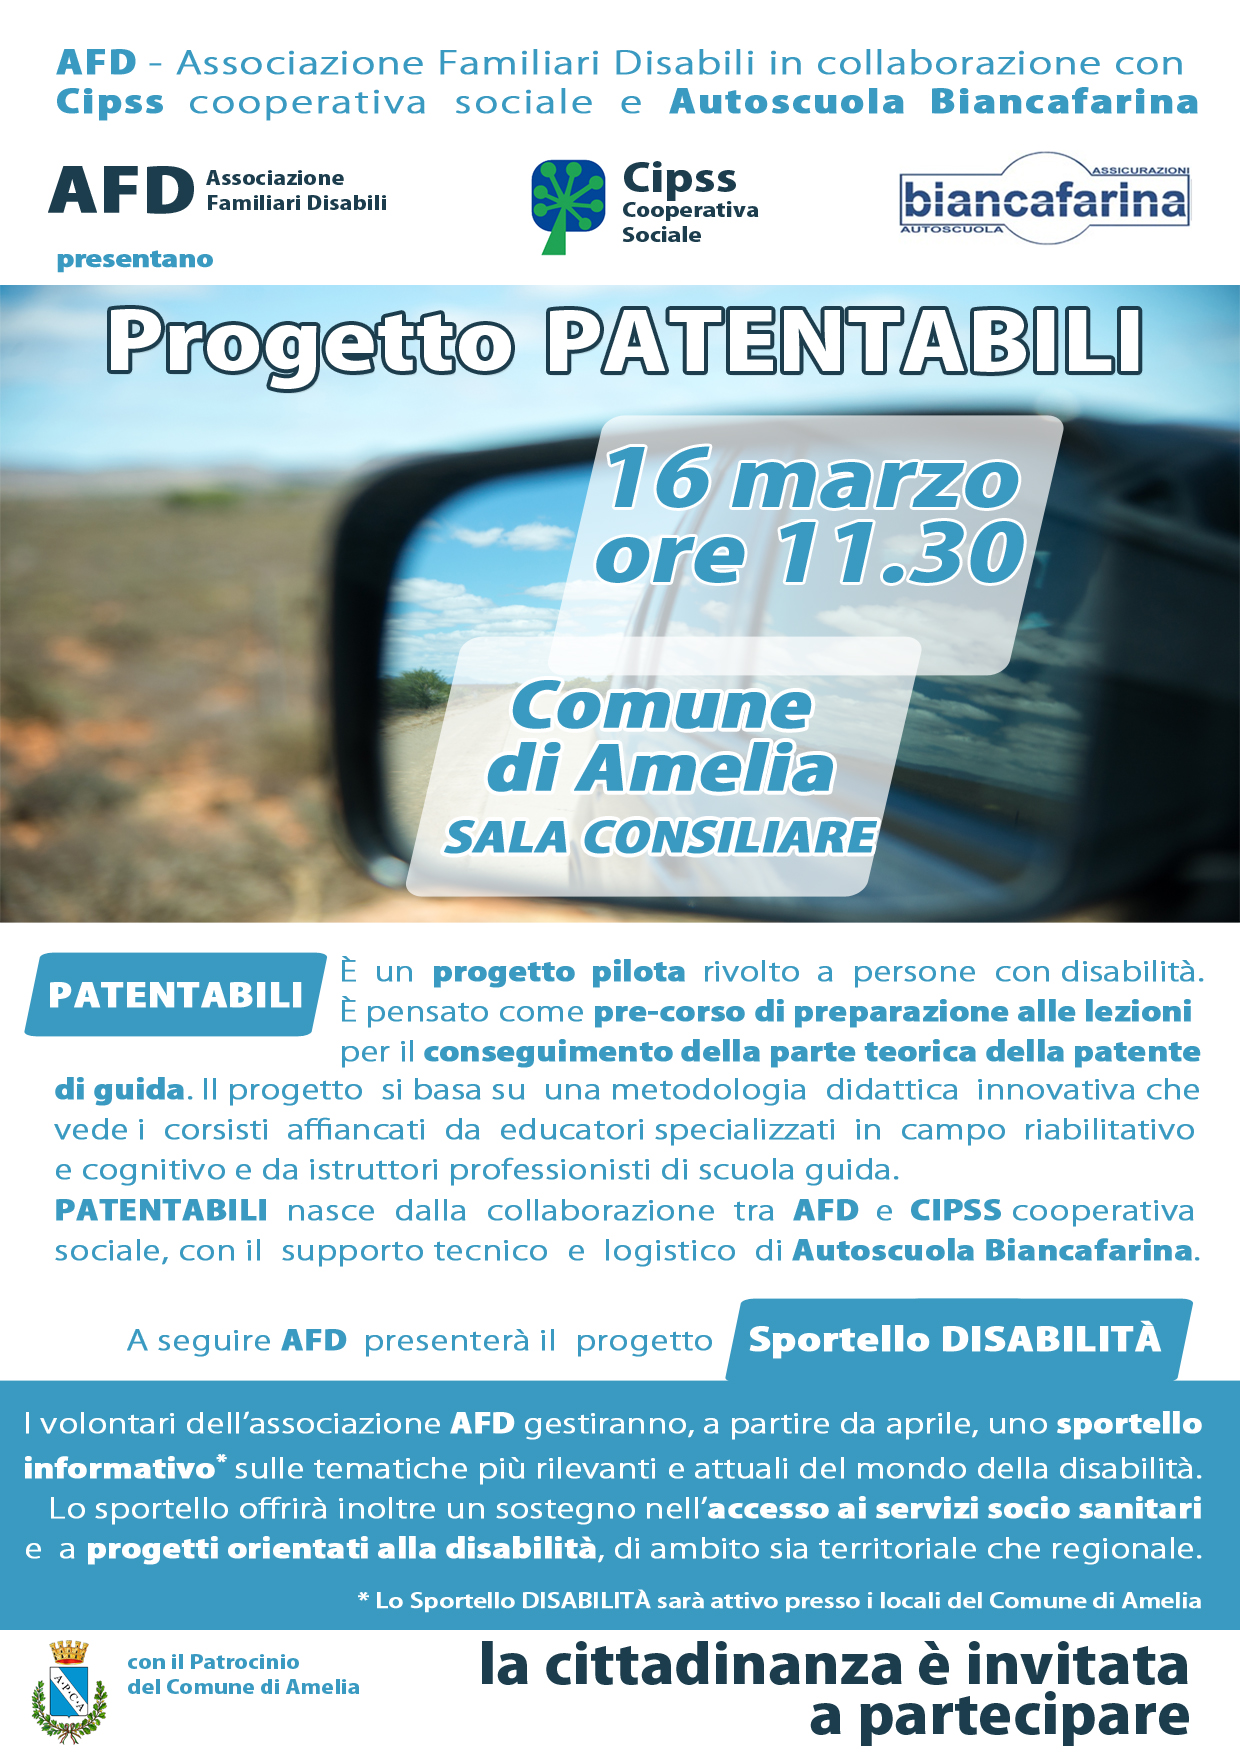 16 marzo – presentazione progetto PATENTABILI (AFD – Cipss)